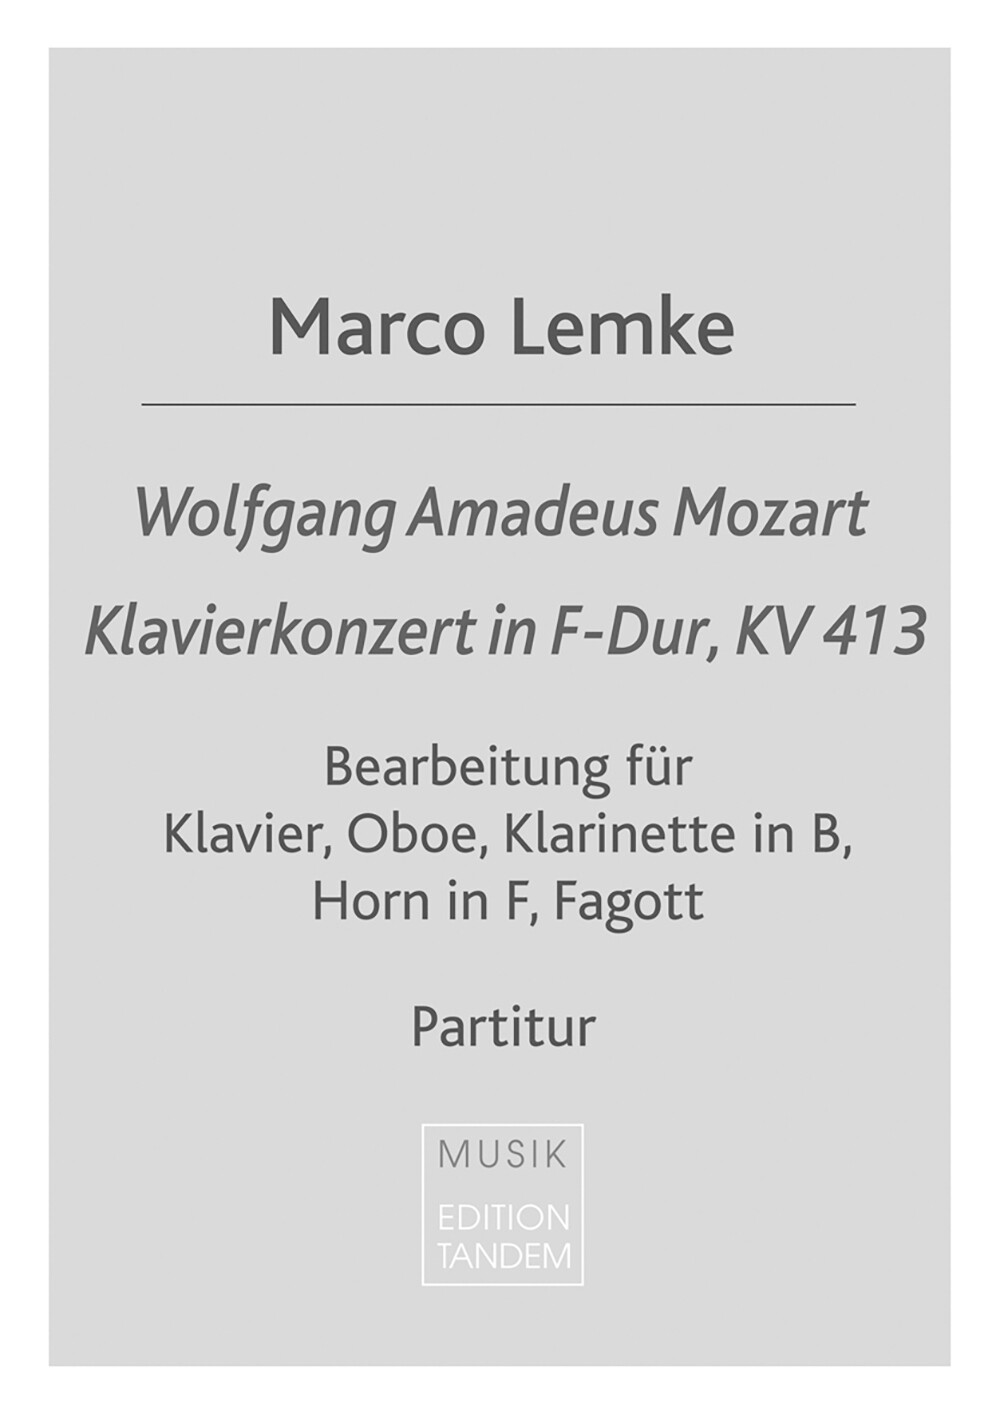 W.A. Mozart - Klavierkonzert in F-Dur, KV 413